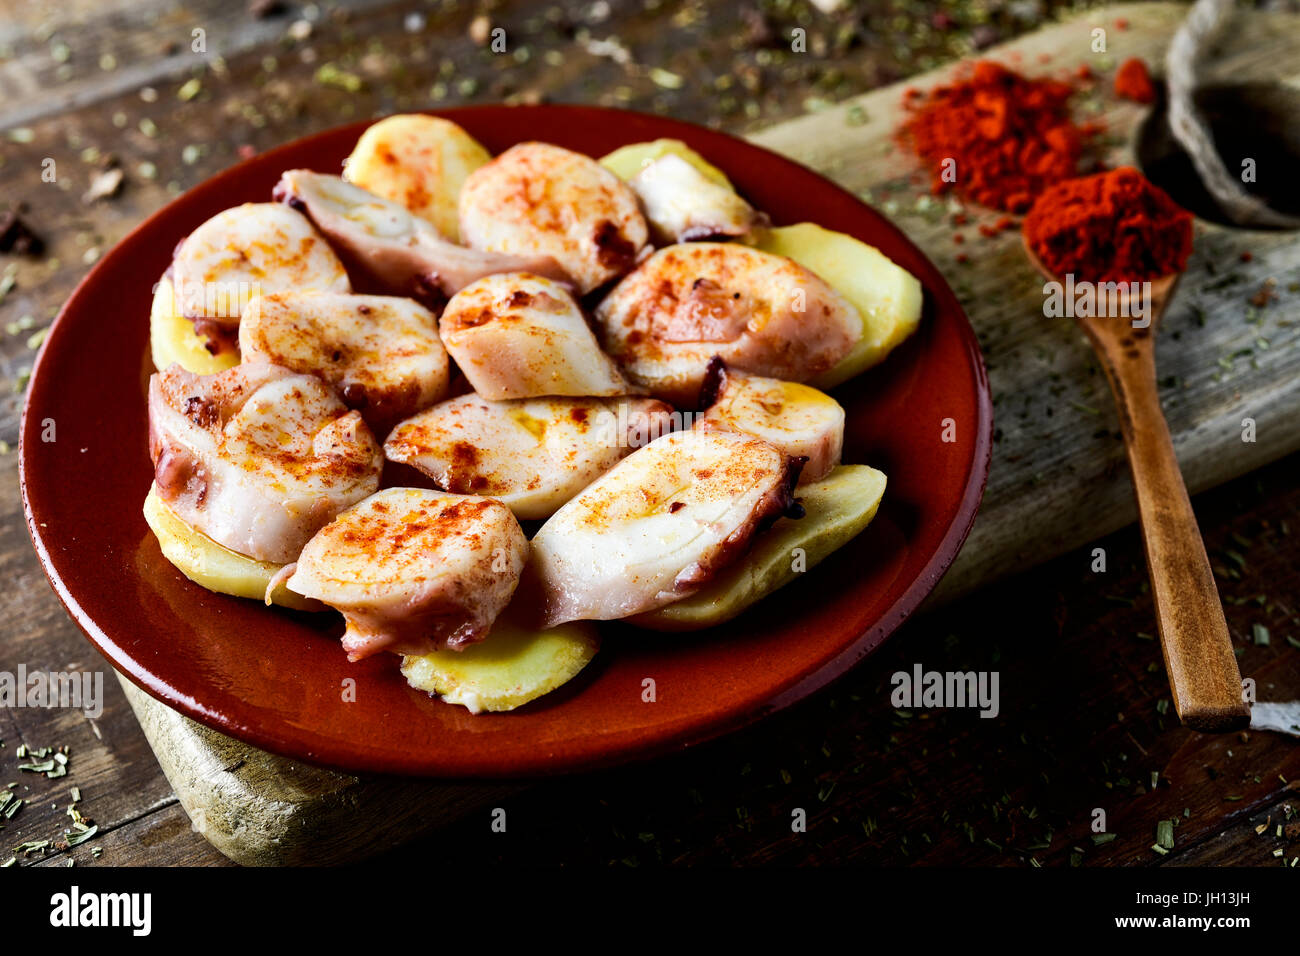 Libre d'une plaque en terre cuite avec Pulpo a la gallega, une recette de poulpe en Espagne typique servi sur les pommes de terre et assaisonnée de paprika, sur une rusti Banque D'Images